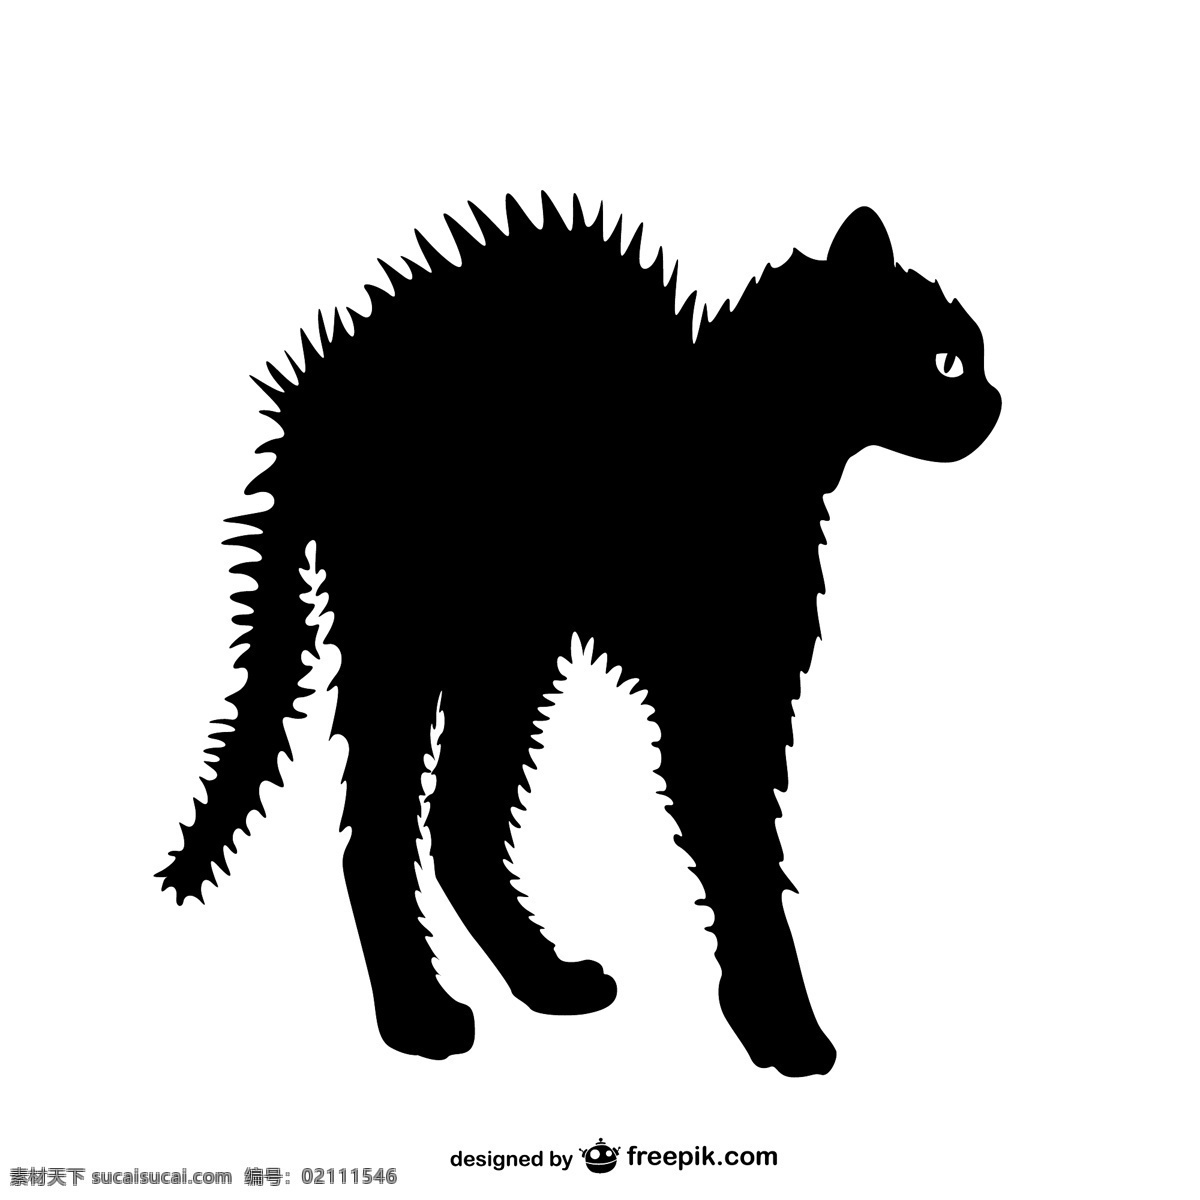 愤怒 猫 剪影 模板 动物 手画 艺术 可爱 图形 轮廓 图形设计 黑色 宠物 绘图 插图 可爱的动物 白色